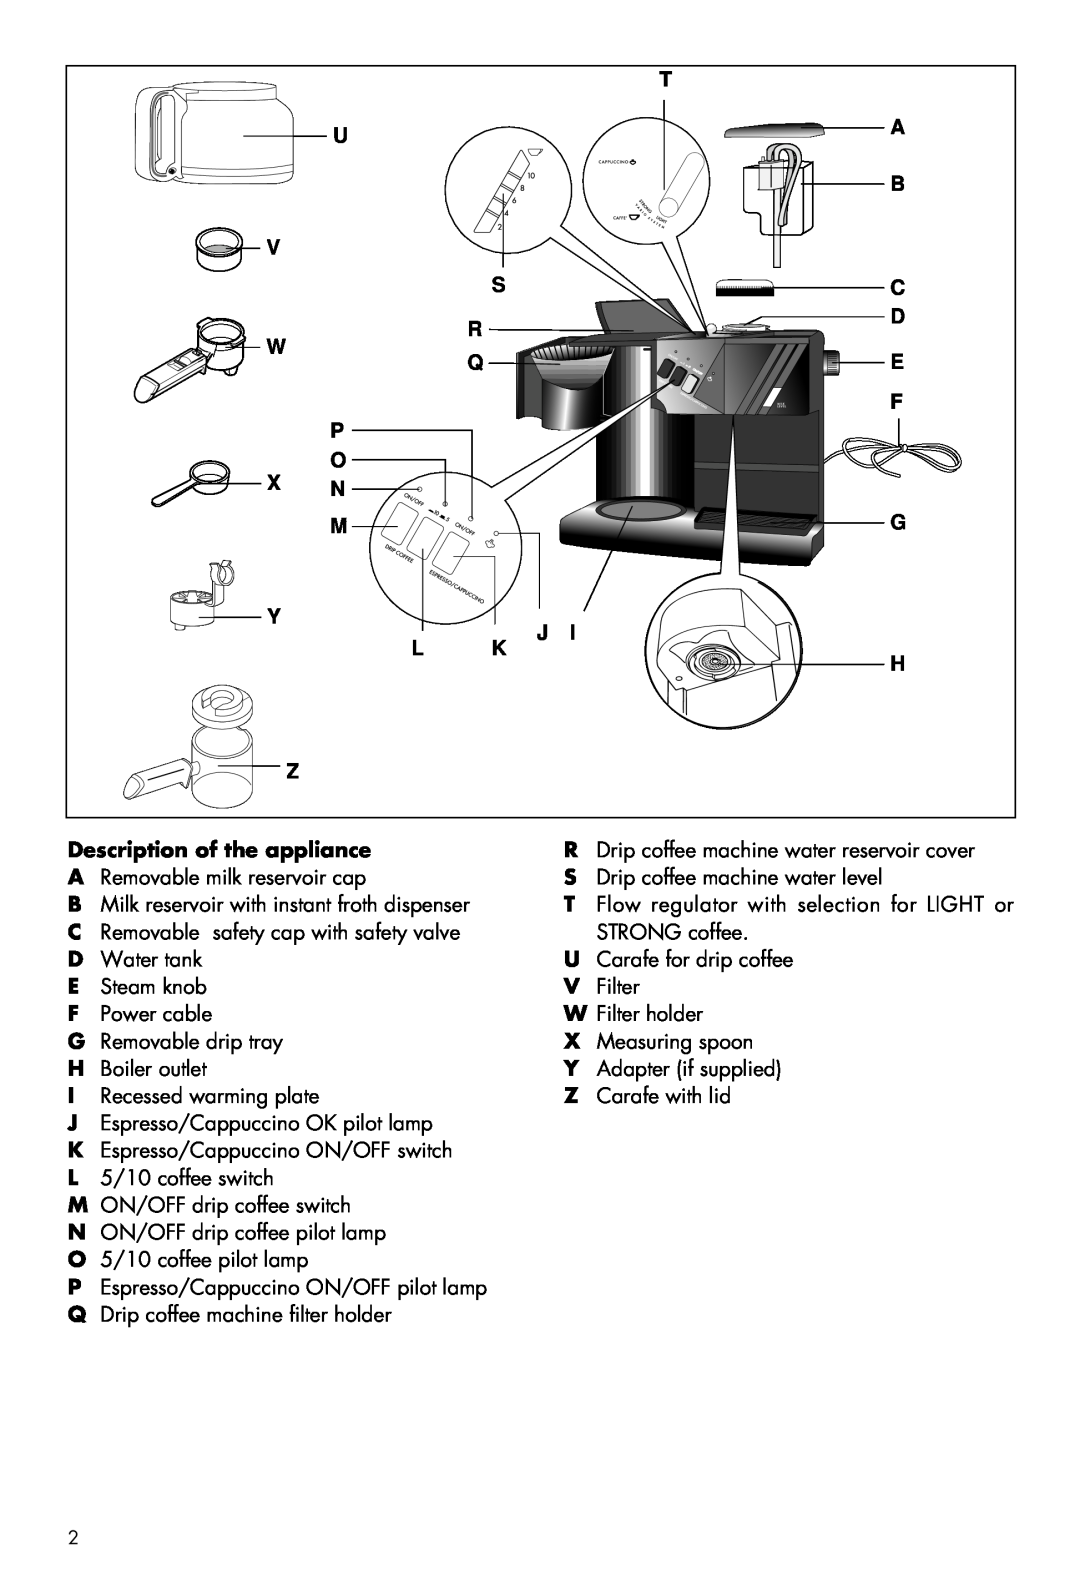 DeLonghi BCO80 manual U V W P O X N M Y L Z, G J K H, Description of the appliance 